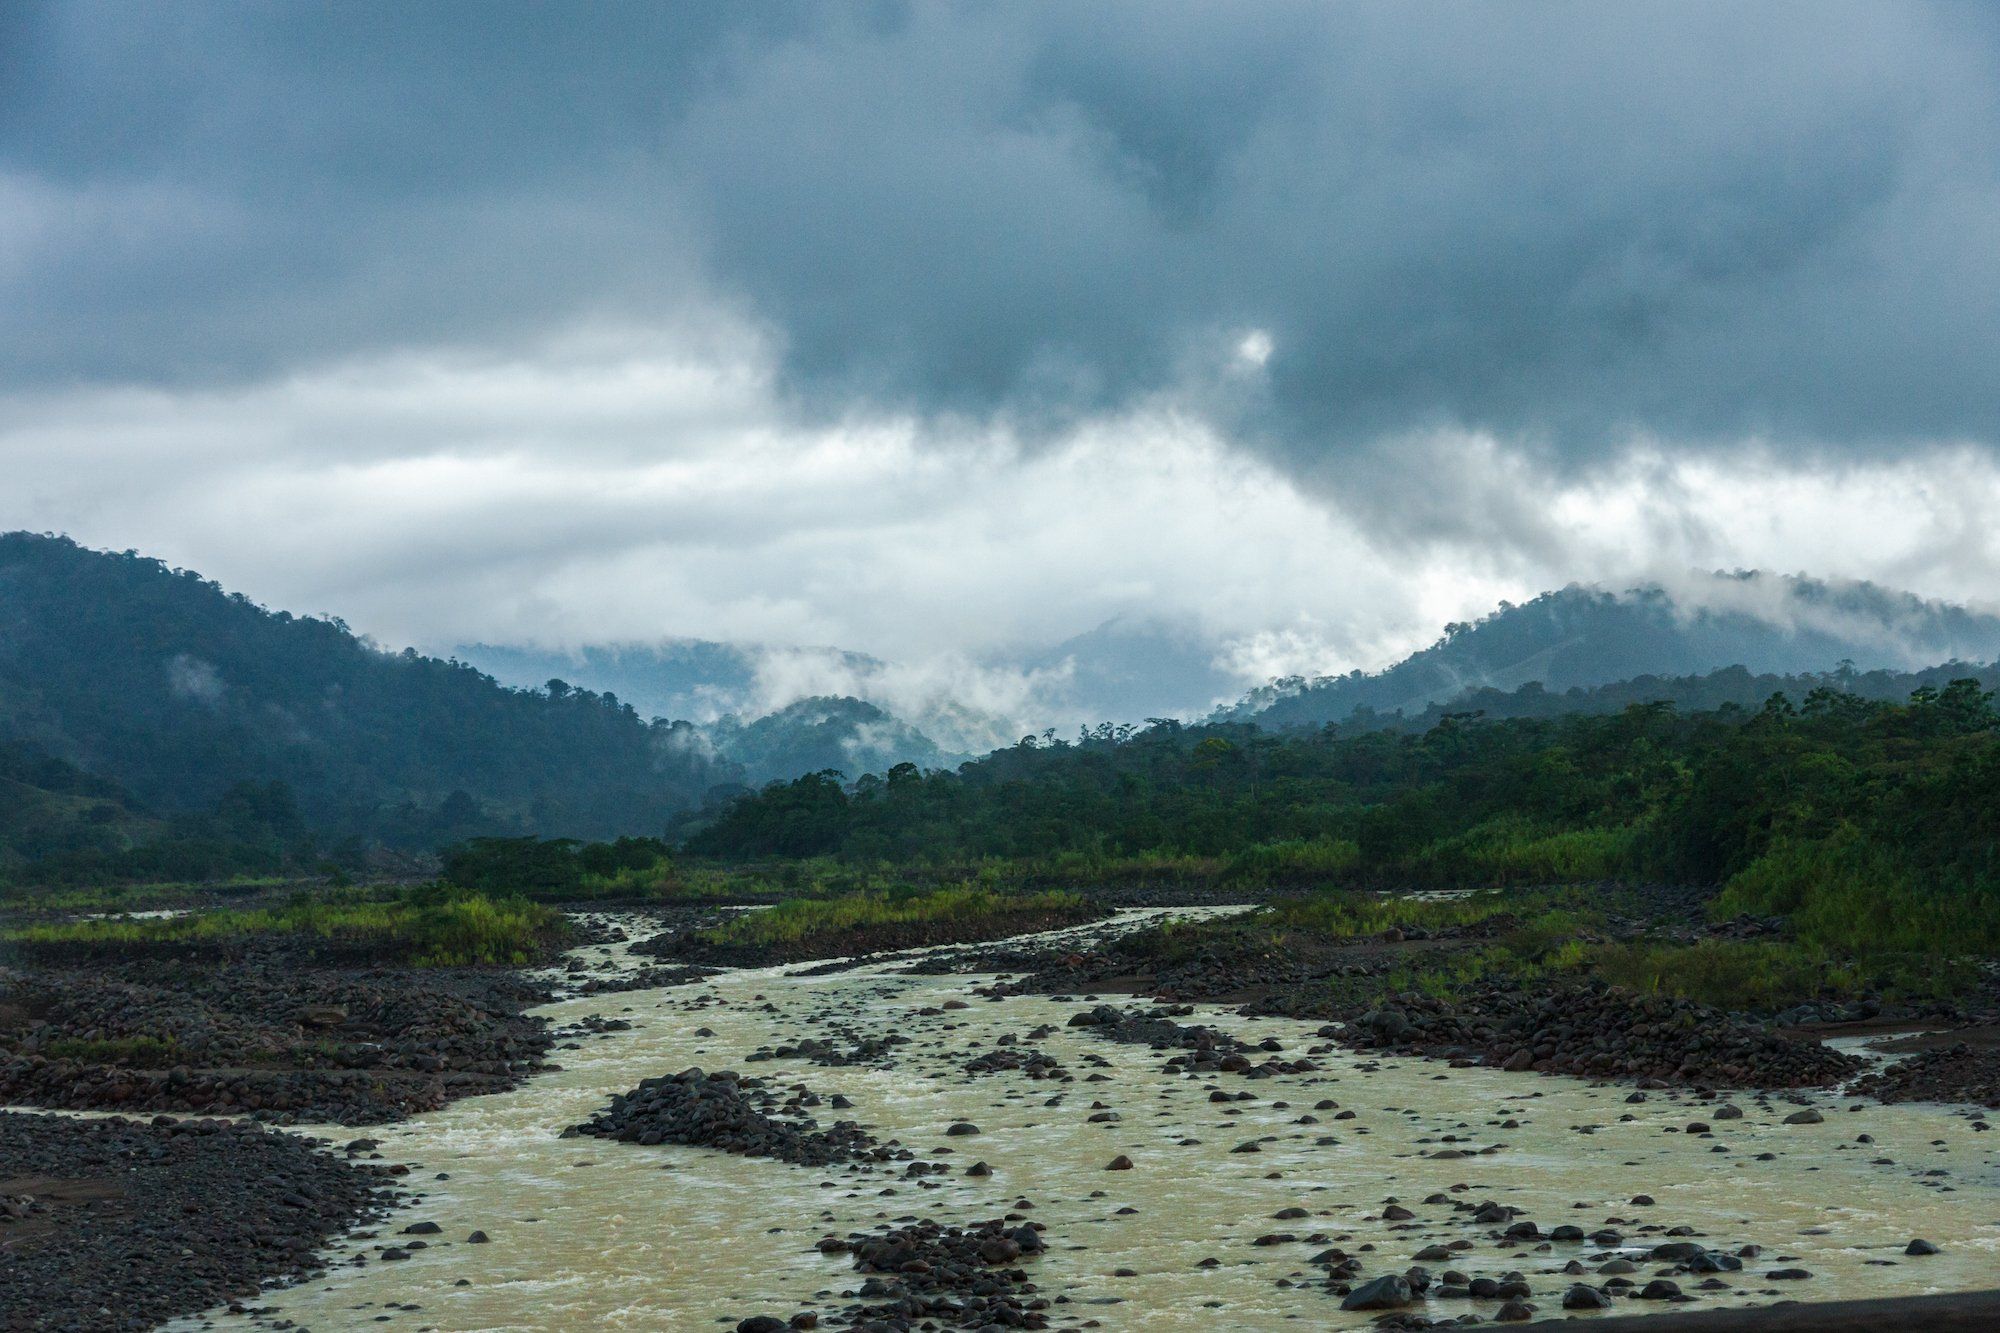 Rio Sucio and highlands, Braulio Carrillio National Park, Costa Rica,